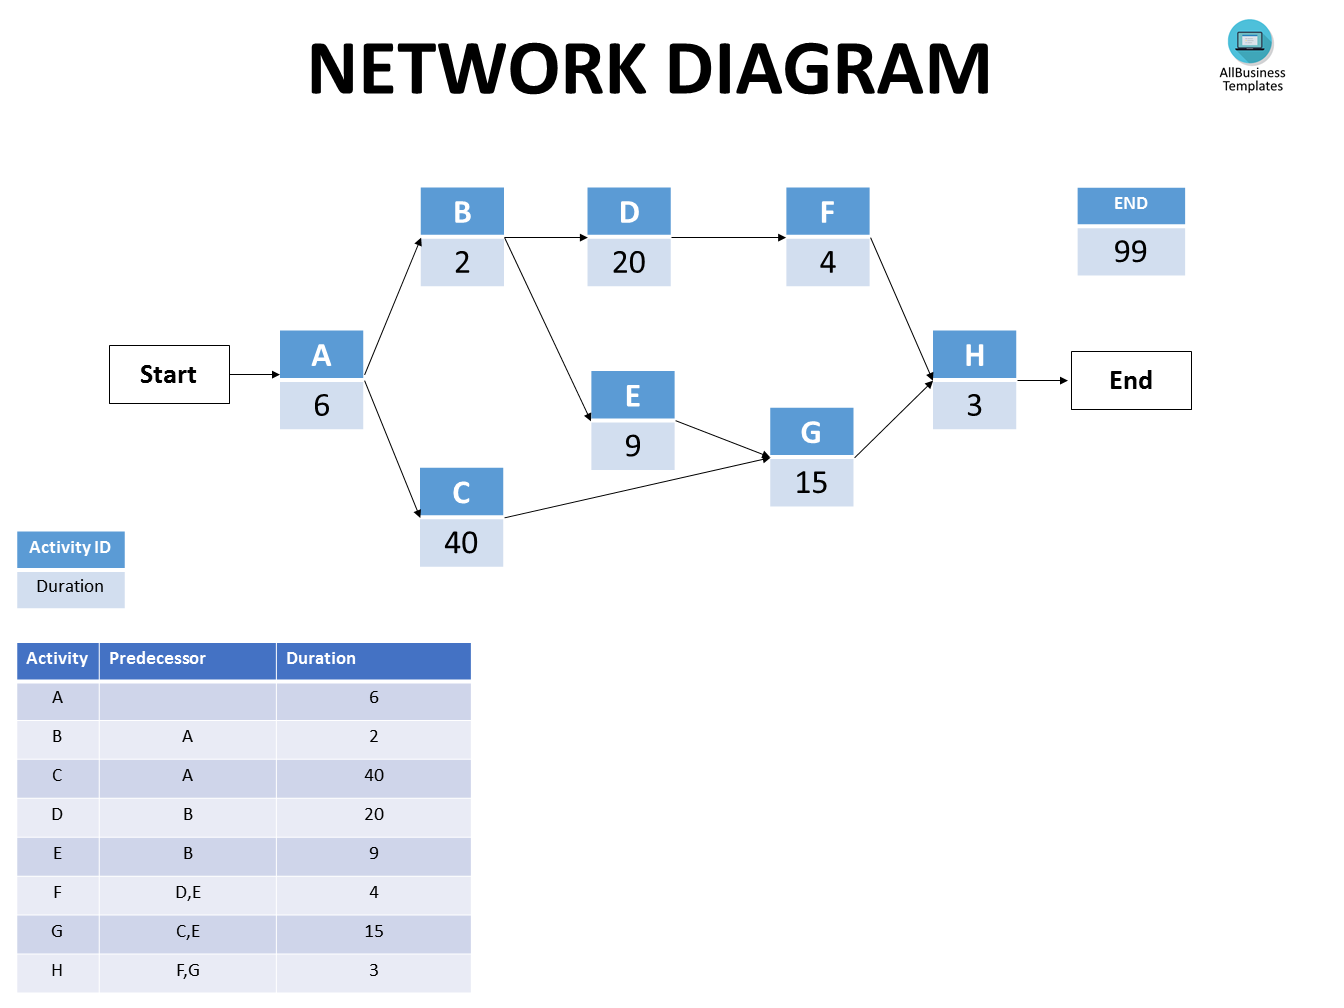 Network Diagram main image